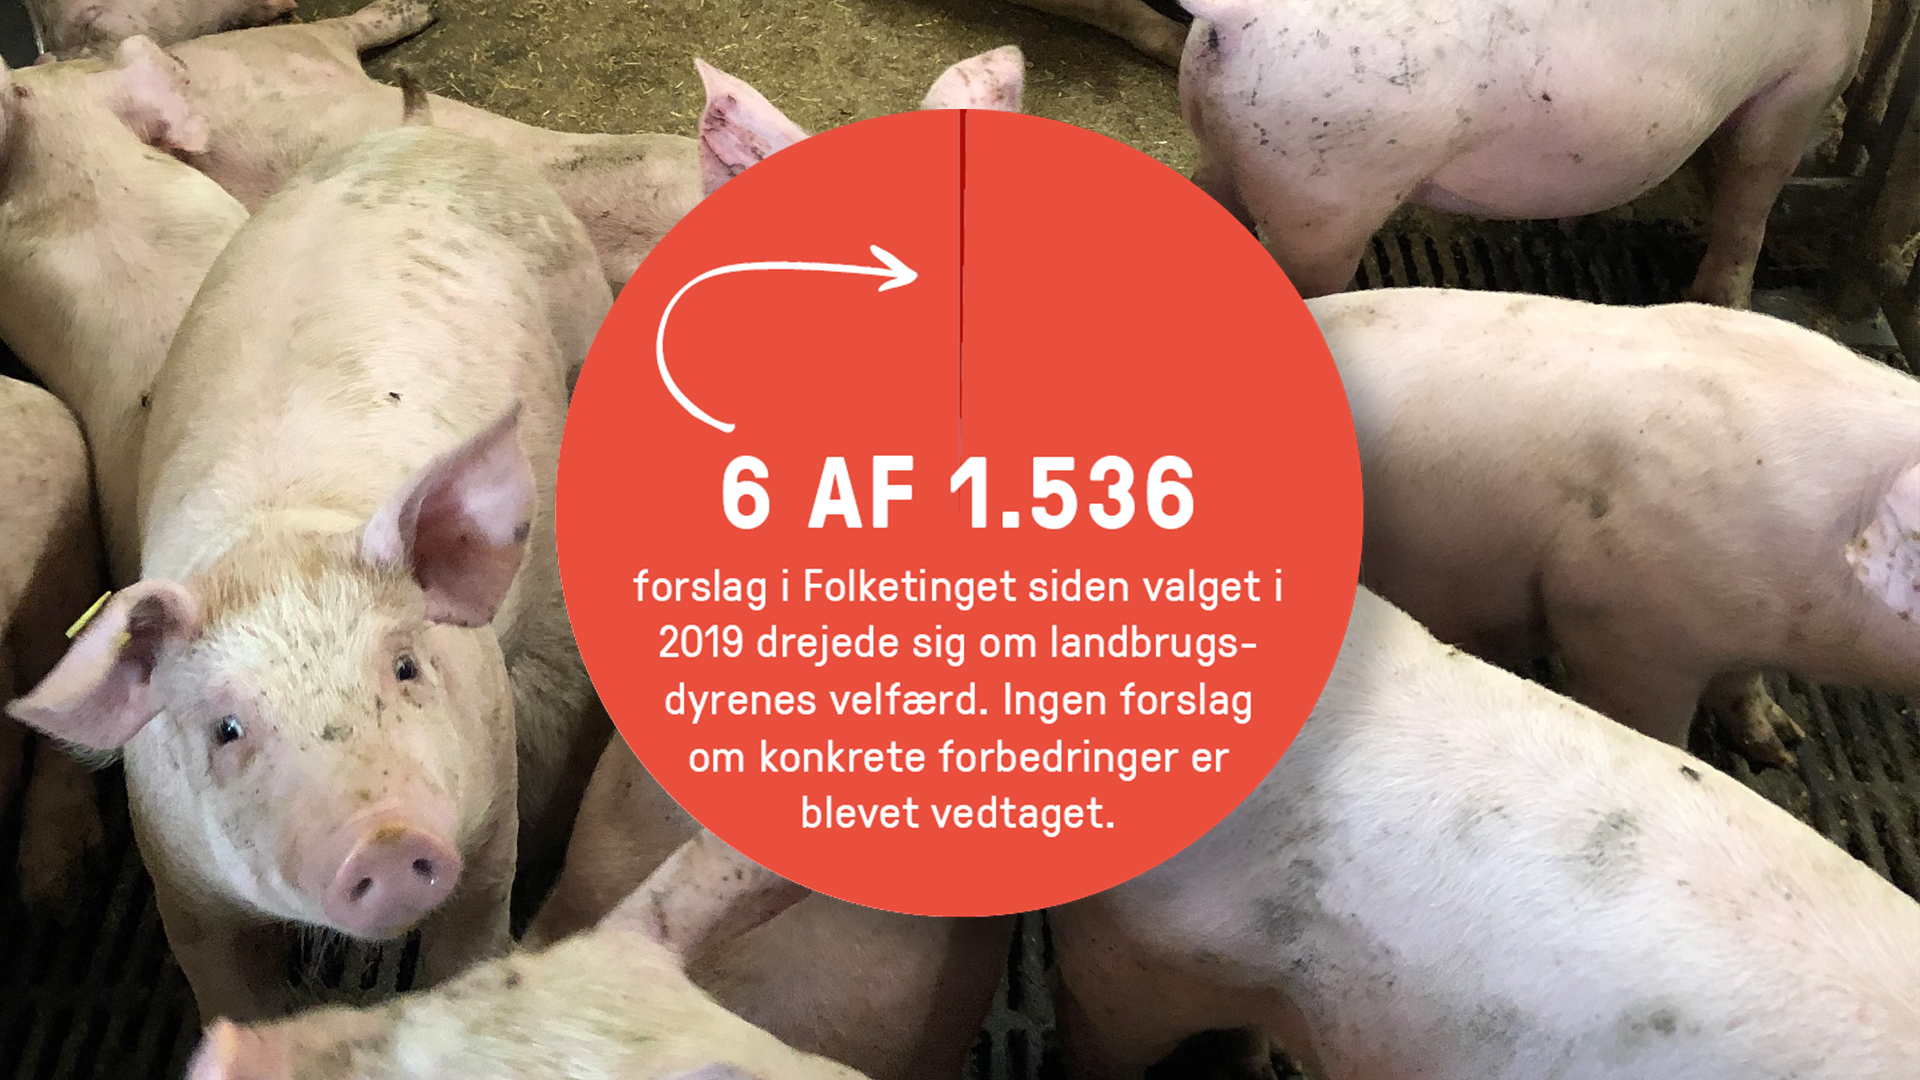 Grise fotograferet ved Åbent Landbrug 2019 og lagkagediagram, der viser antallet af forslag siden 2019, der drejer sig om landbrugsdyrenes velfærd.